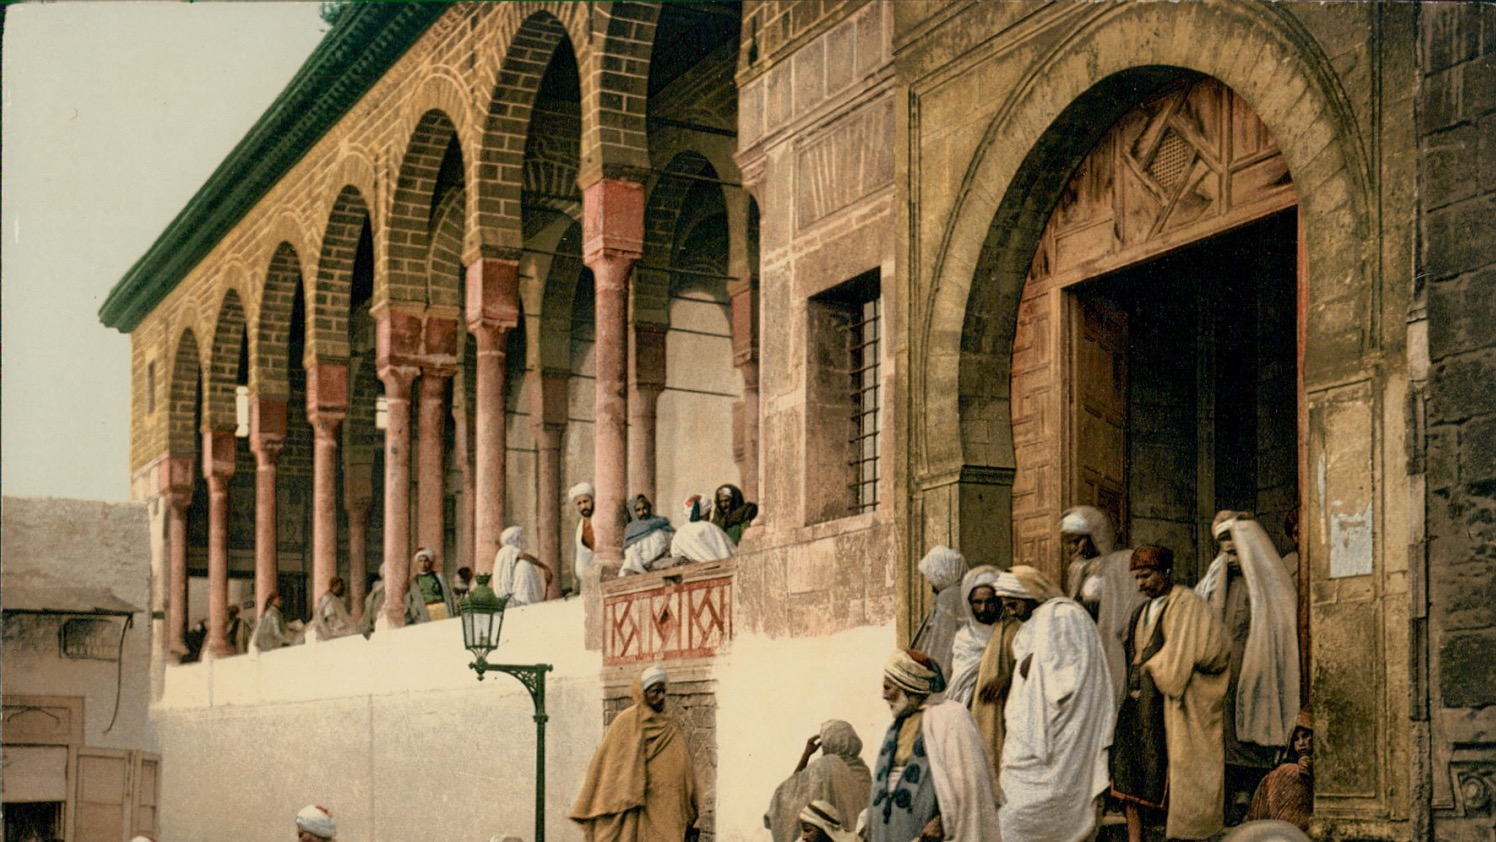 History of the Medina